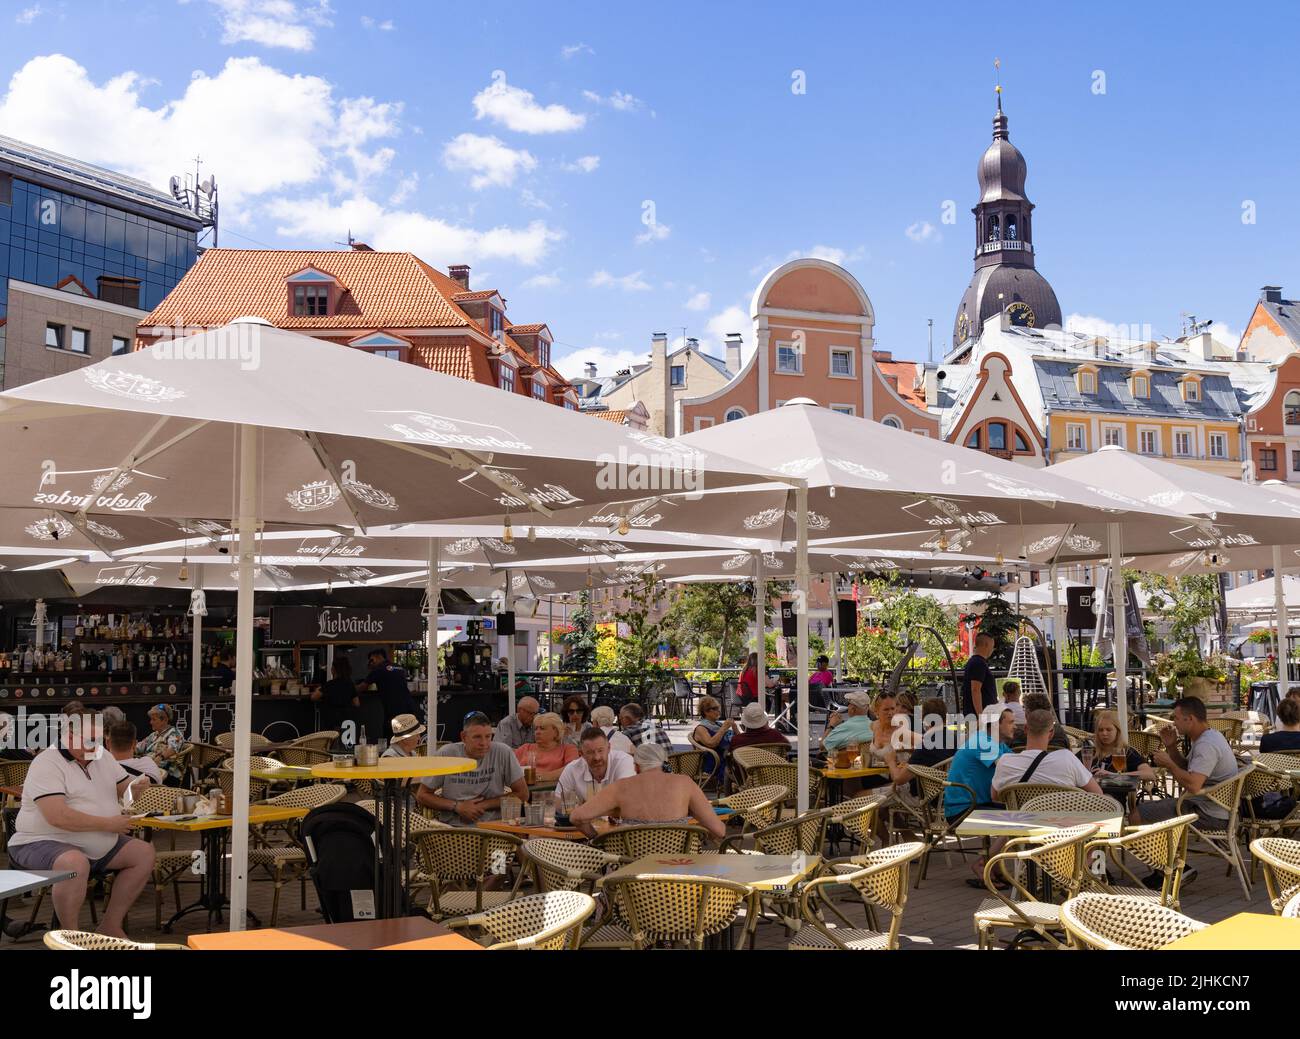 Restaurante Riga; gente sentada comiendo afuera en un restaurante en verano, Ciudad Vieja Riga, Riga Letonia, Europa Foto de stock